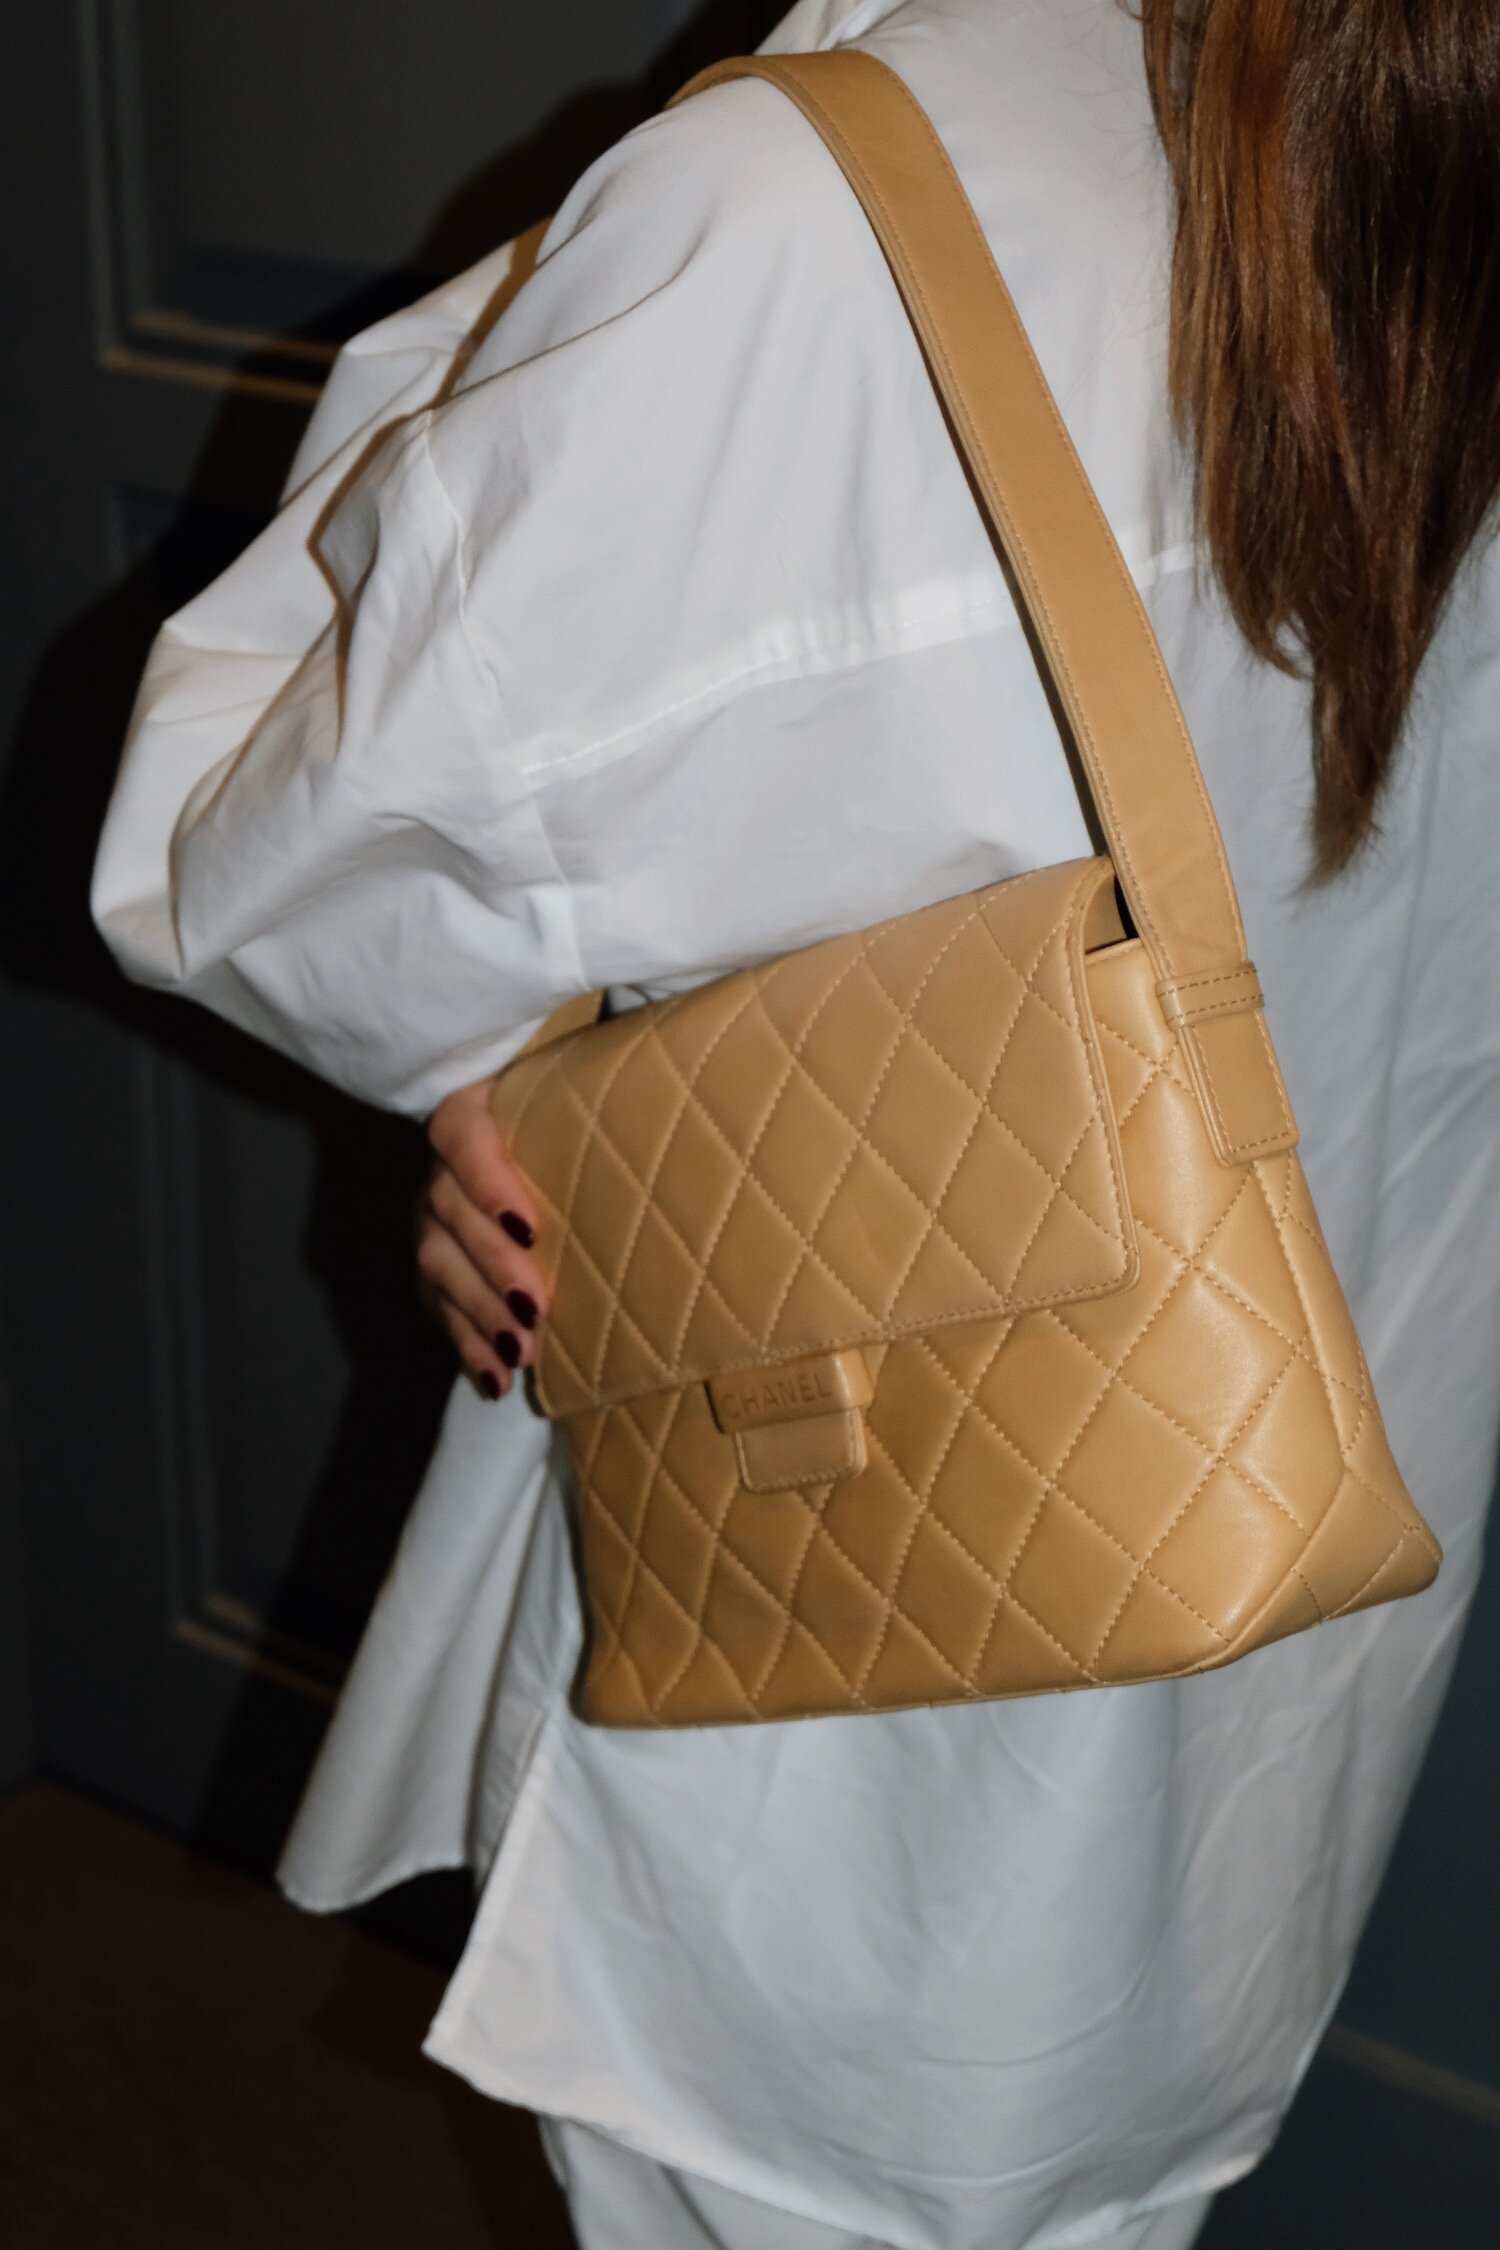 Chanel Vintage Shoulder bag BEIGE